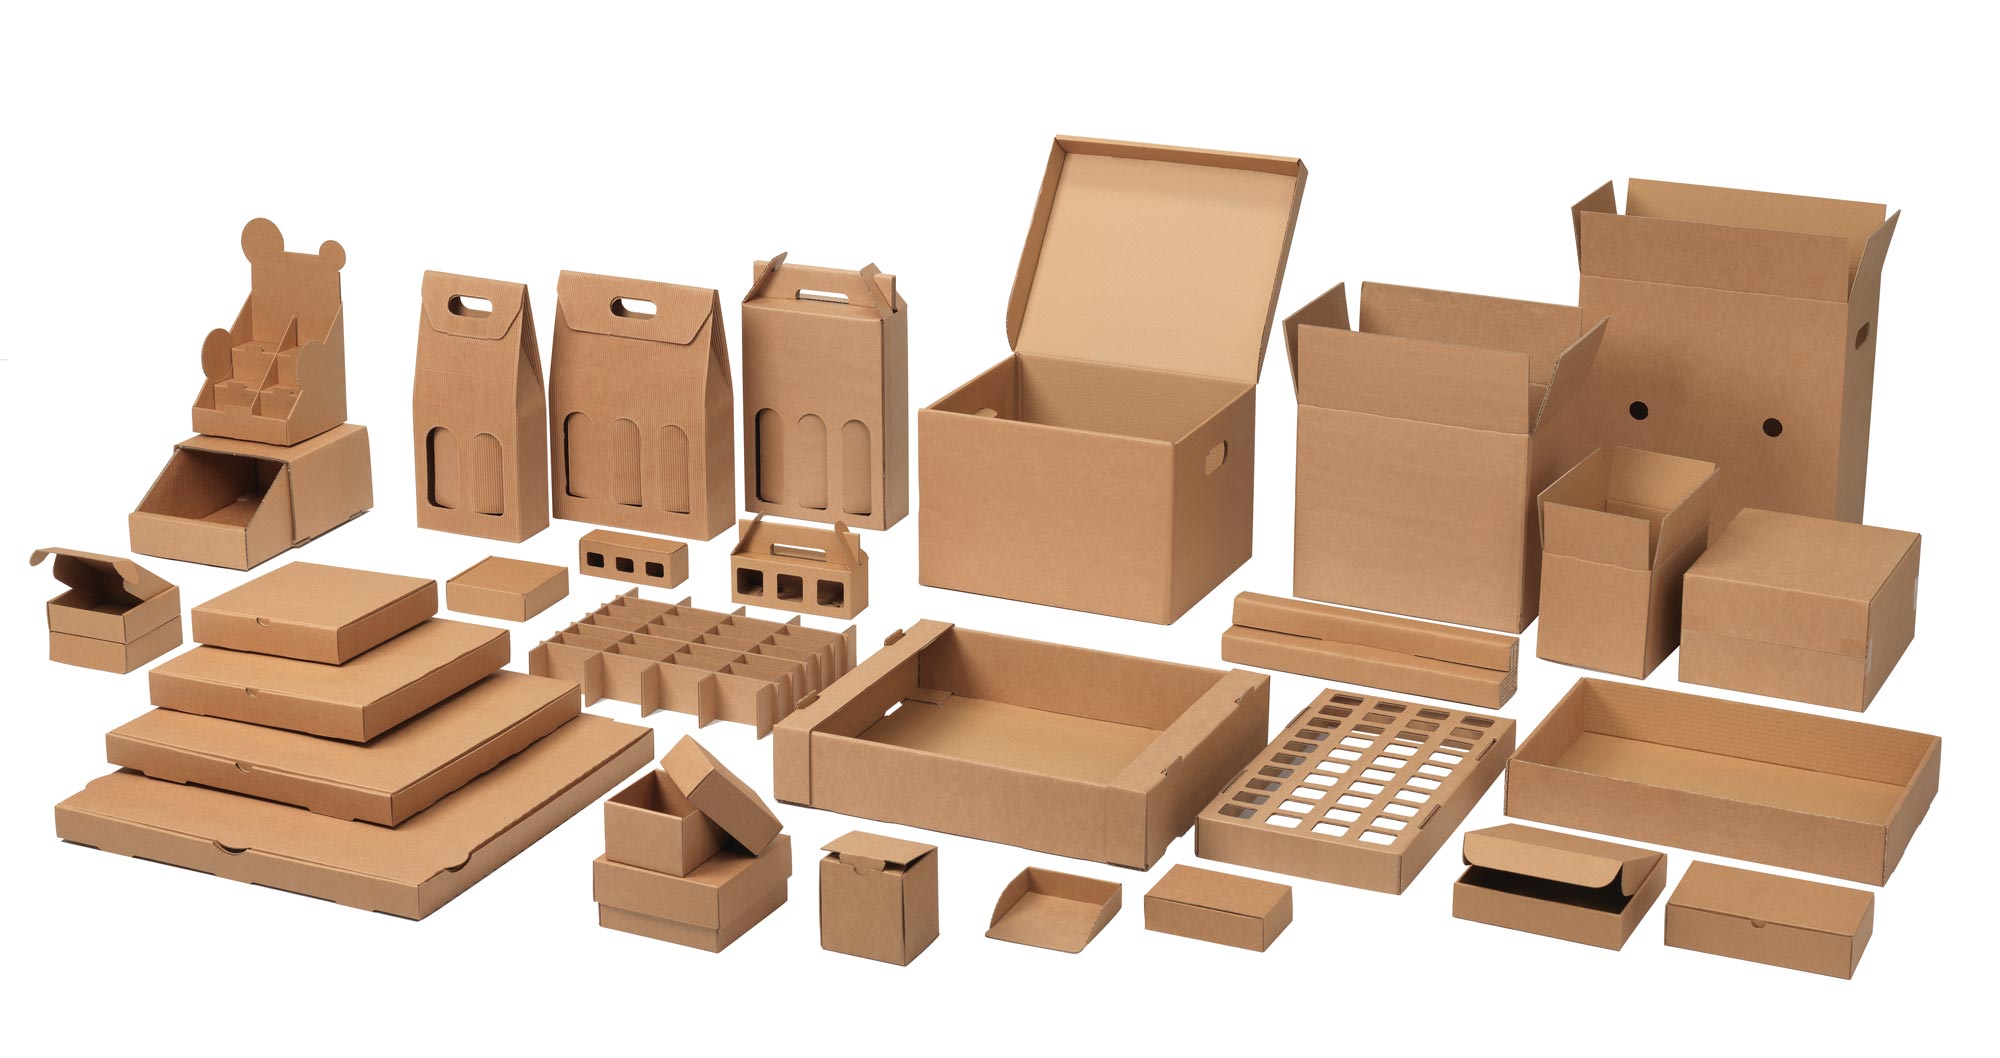 Multi Packaging vast boxes